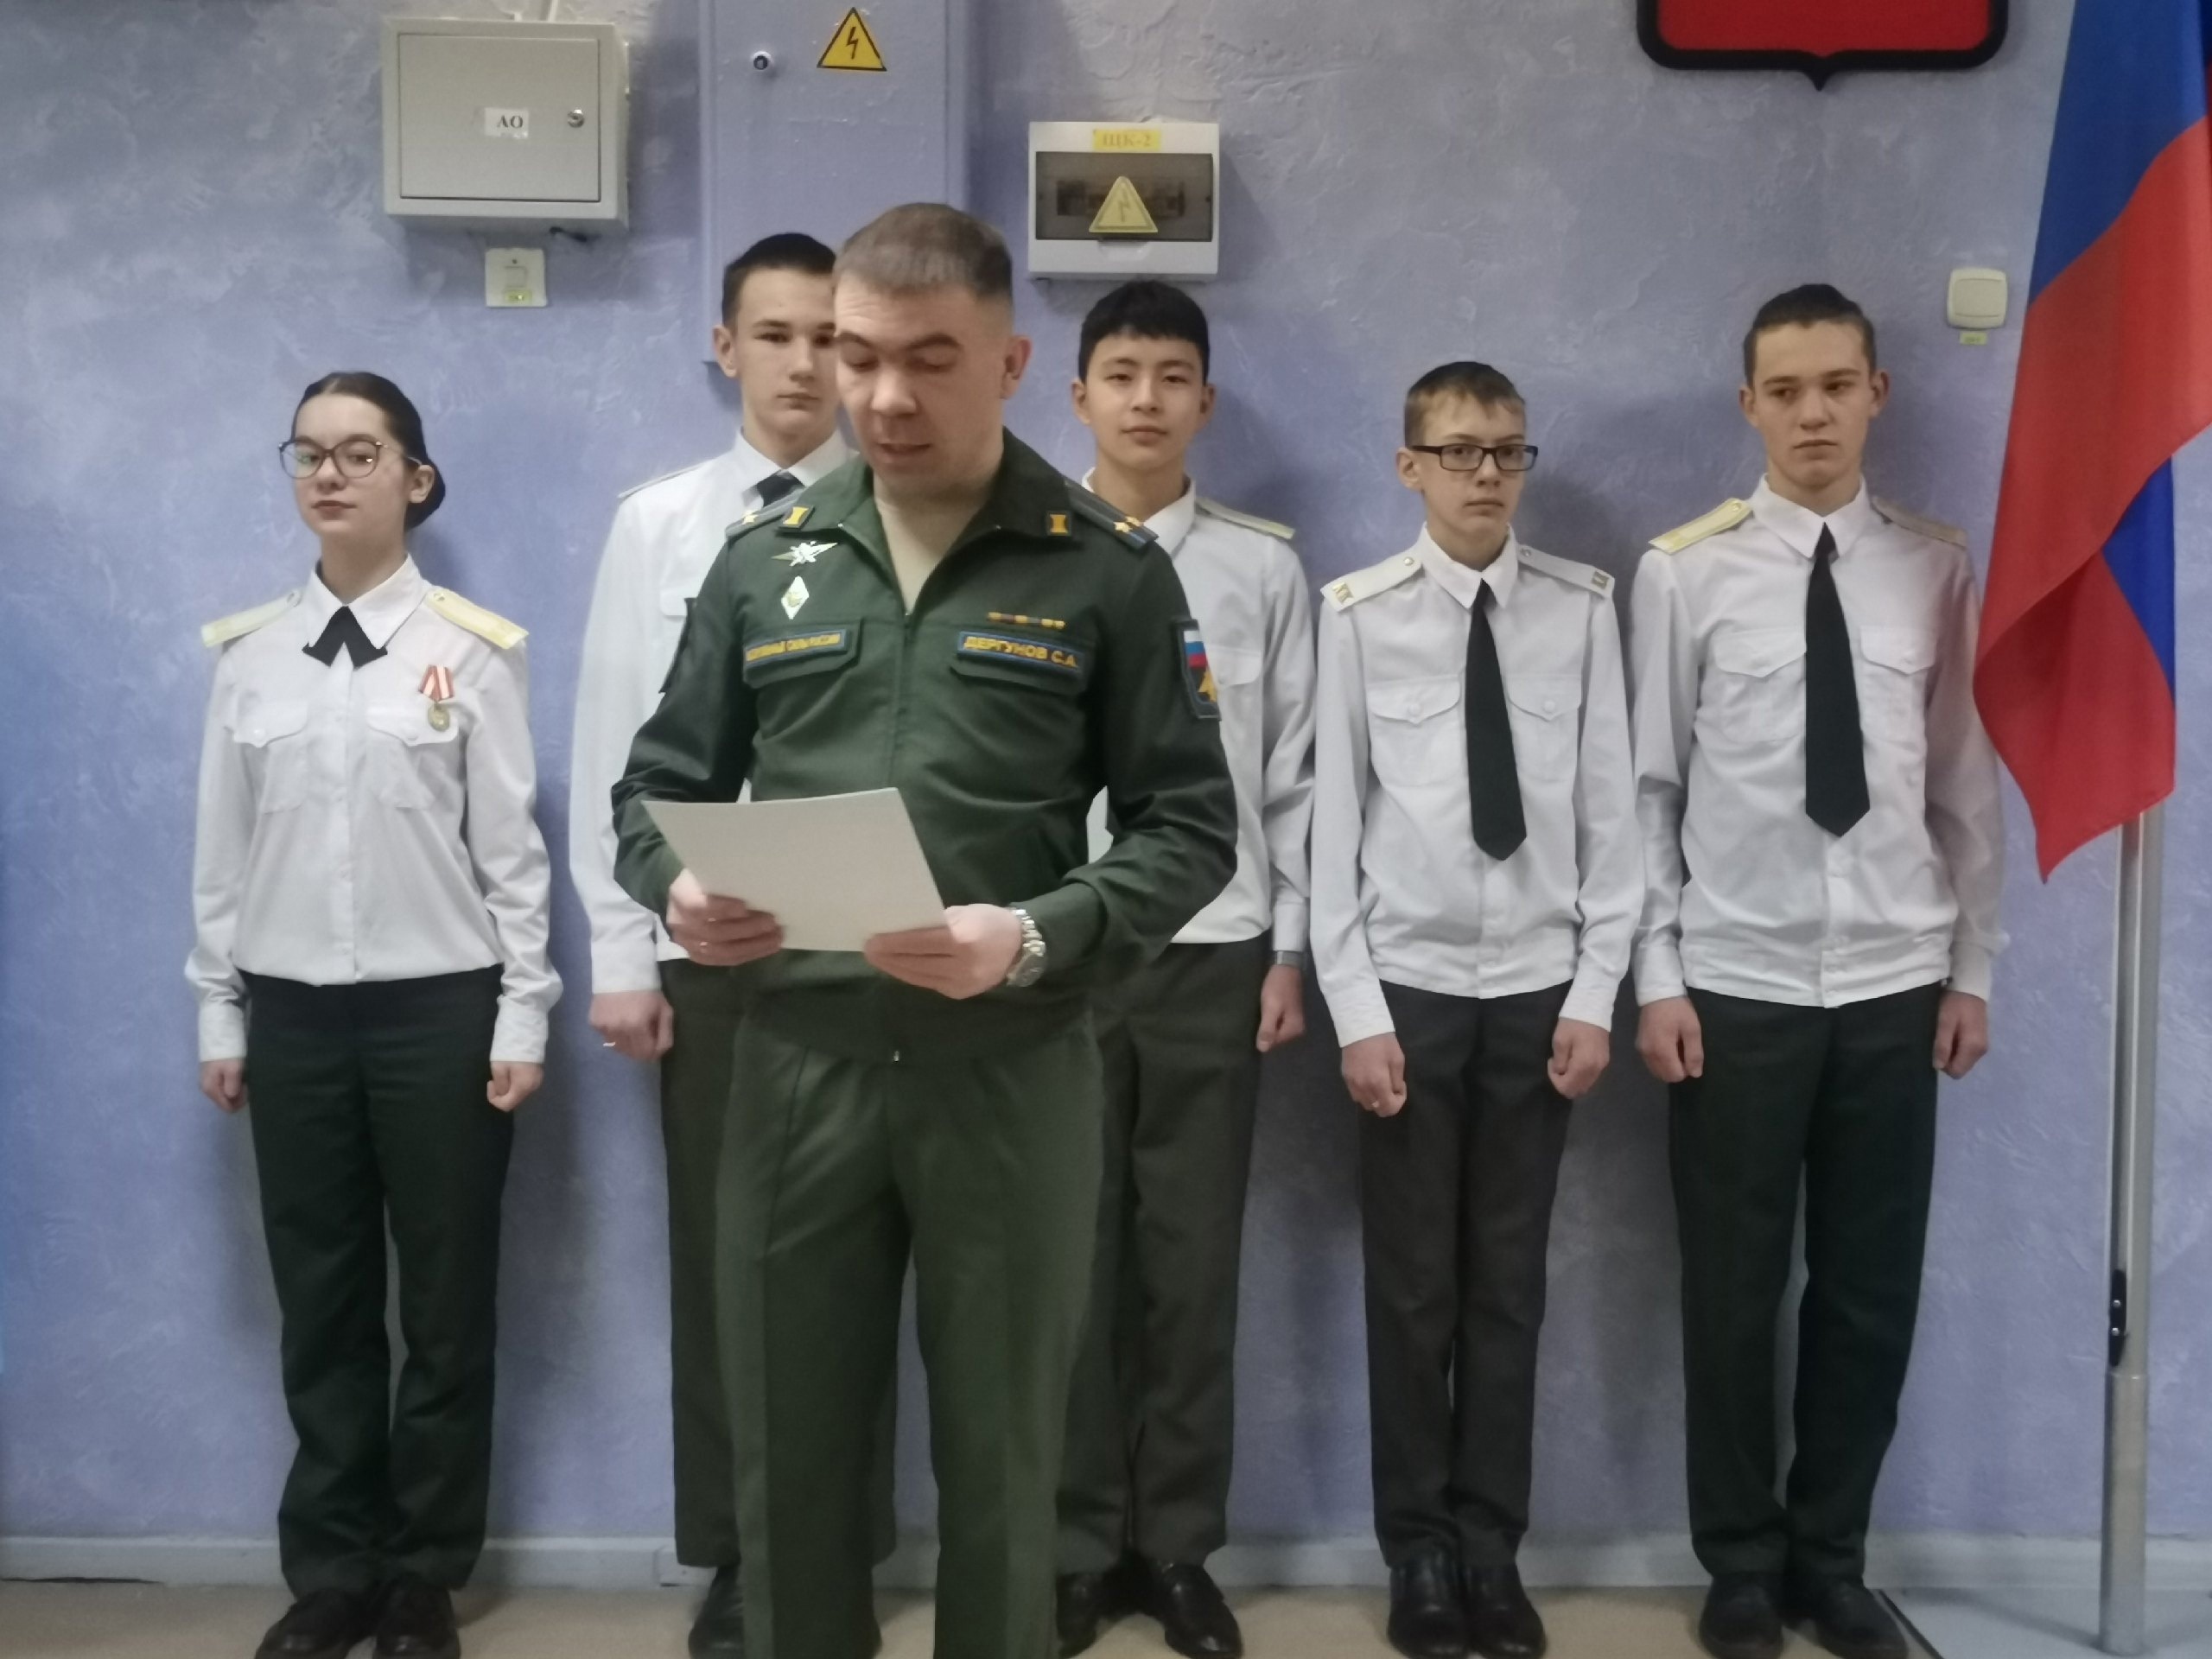  17 февраля в России отмечался День кадета, дата которого приурочена ко дню создания первой школы для обучения детей дворян..